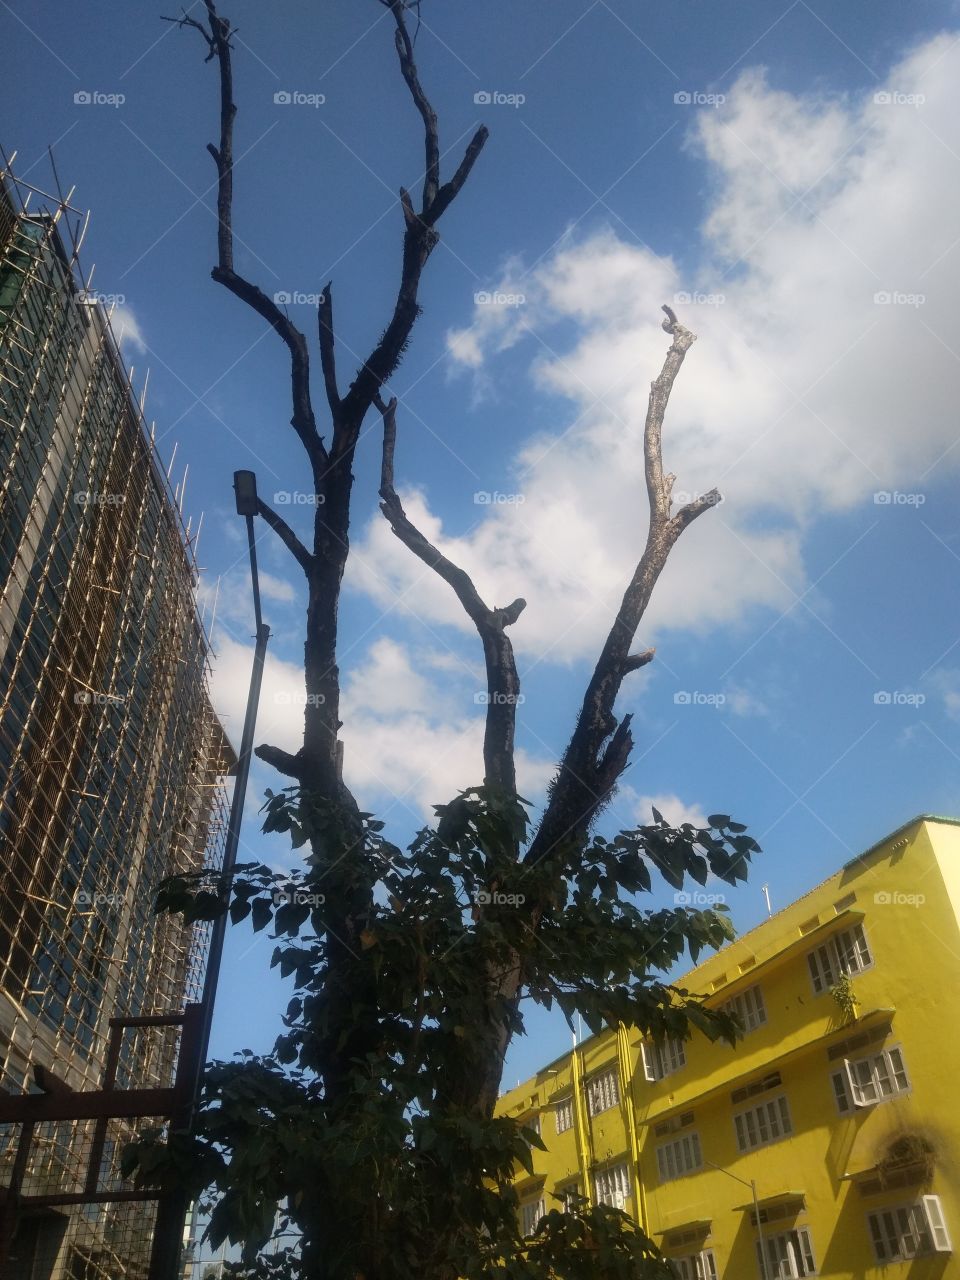 DIEING TREES IN BETWEEN BUILDINGS